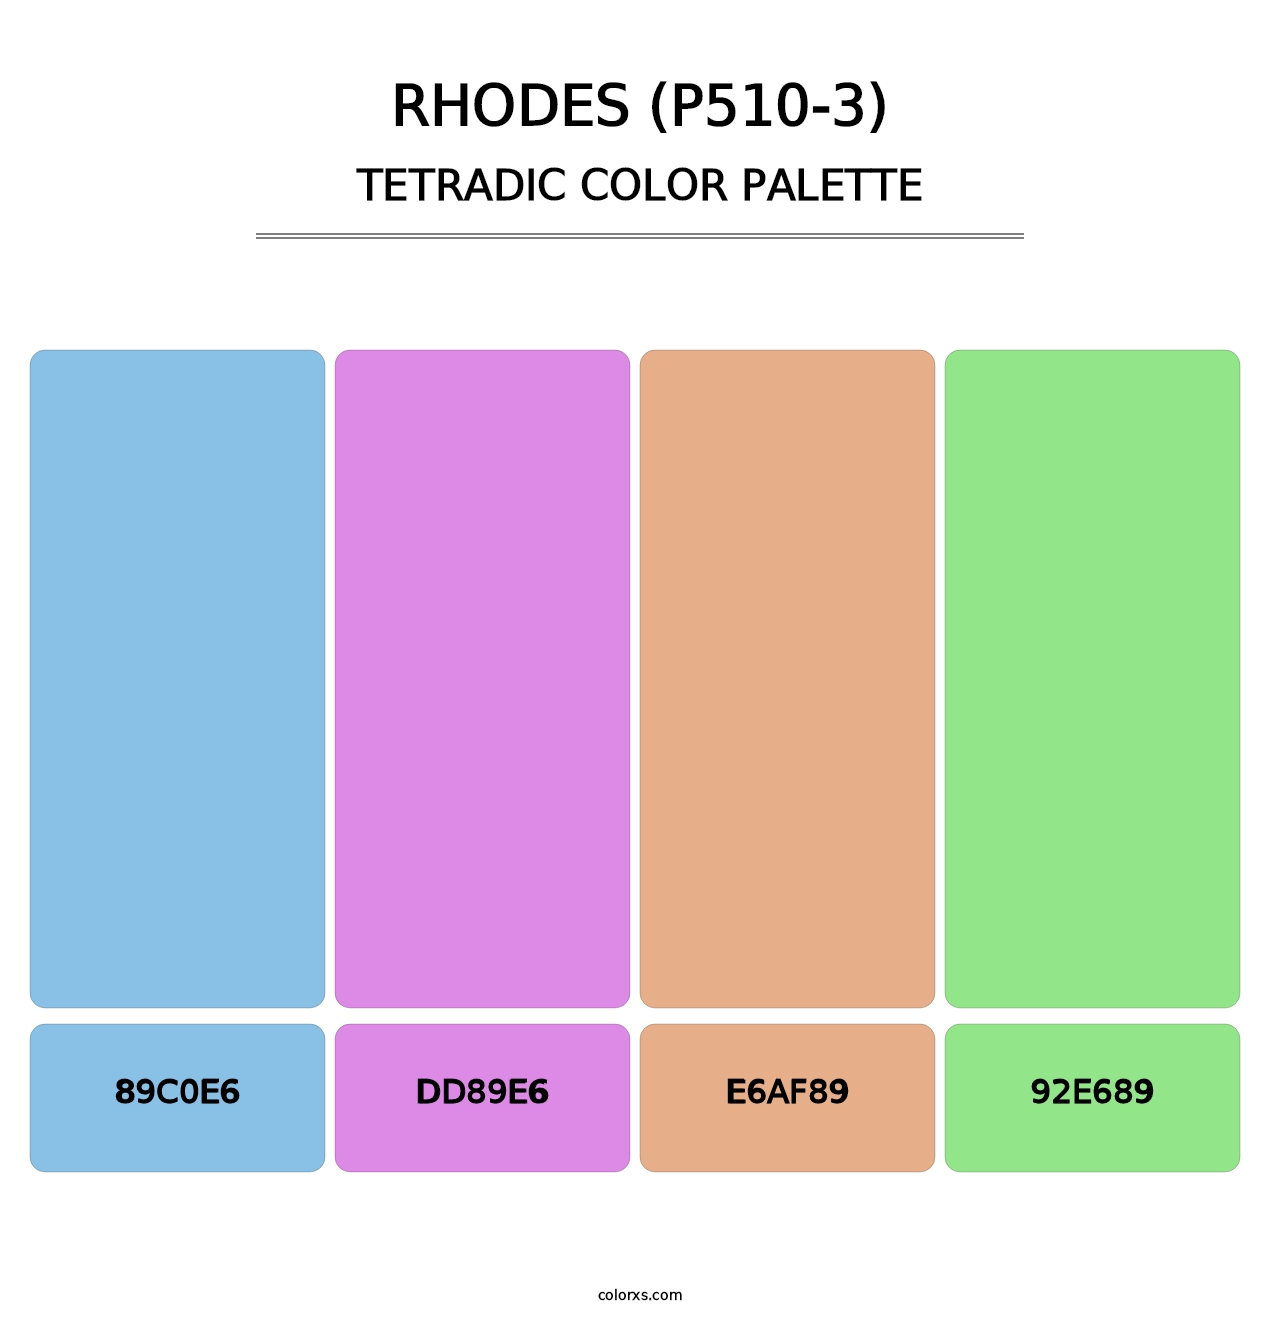 Rhodes (P510-3) - Tetradic Color Palette